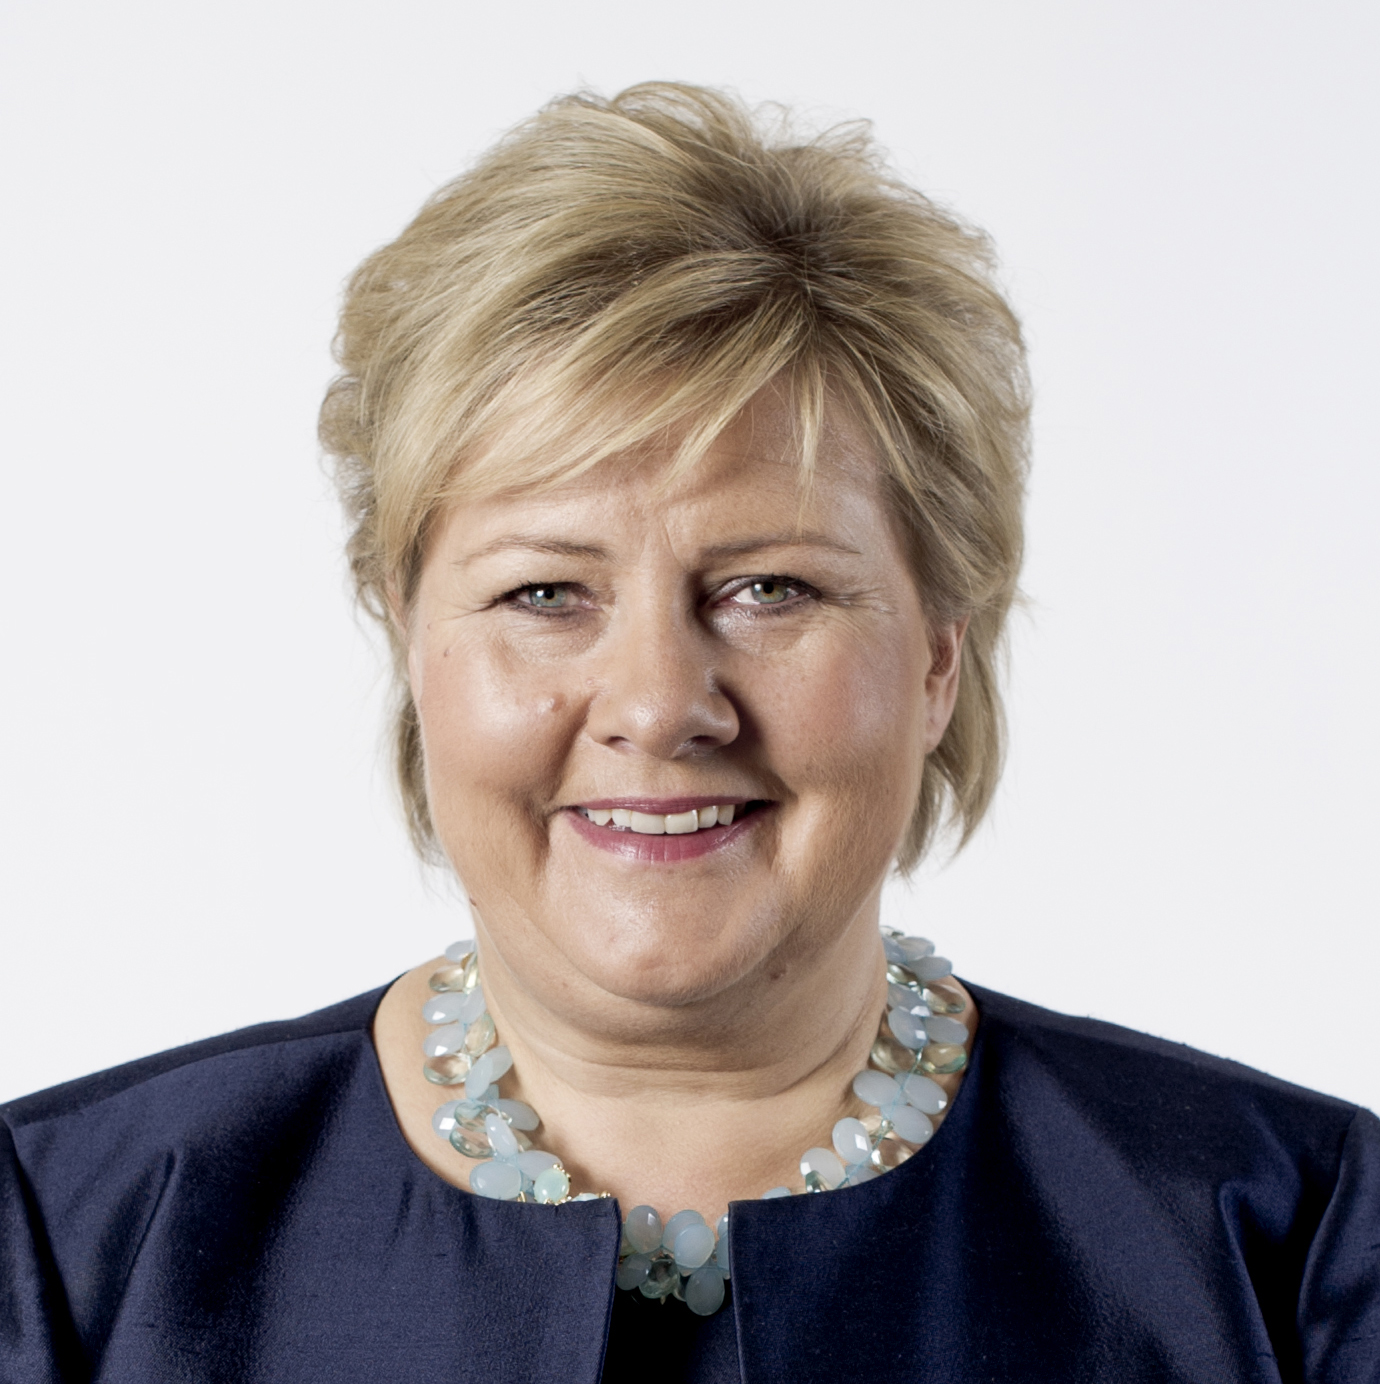 Erna Solberg norvég politikus, 2004-töl a konzervatív Pàrt Høyre elnöke. 16. Október 2013 Miniszterelnök. Szül.: 24. Február 1961 (Kora 55 év), Bergen, Norvégia Férje: Sindre Finnes (házasok 1996 óta)